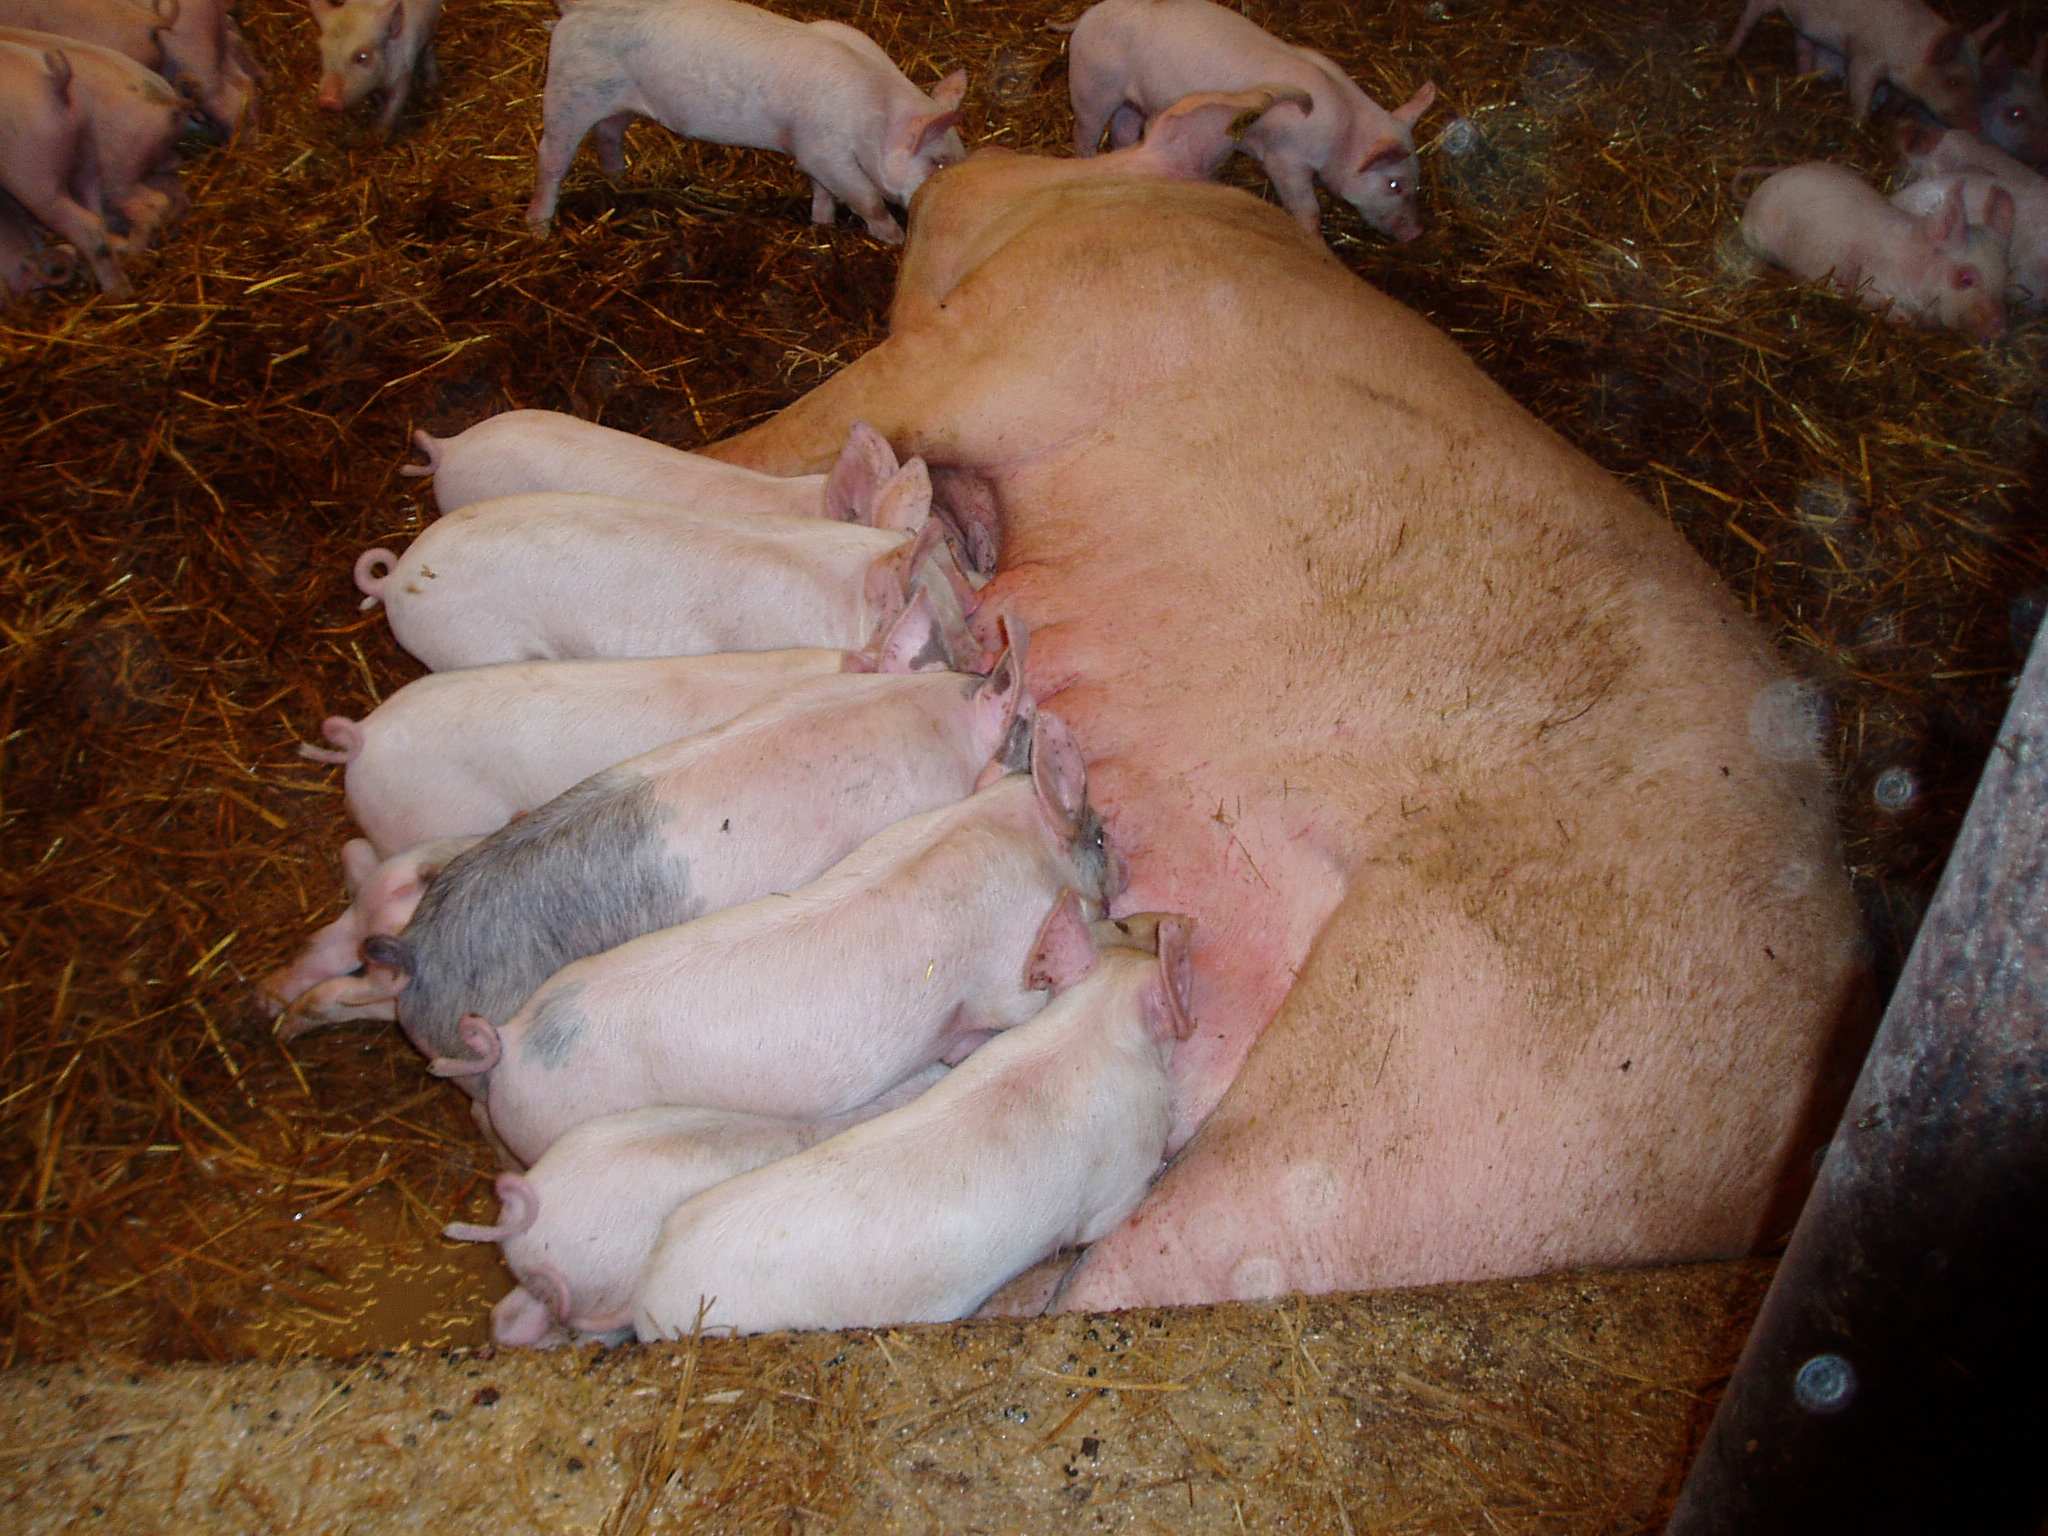 gruppen. Suggor som avvänjs tidigare än tre veckor efter grisning, riskerar att utveckla äggstockscystor som kan hämma aktiviteten i äggstockarna.